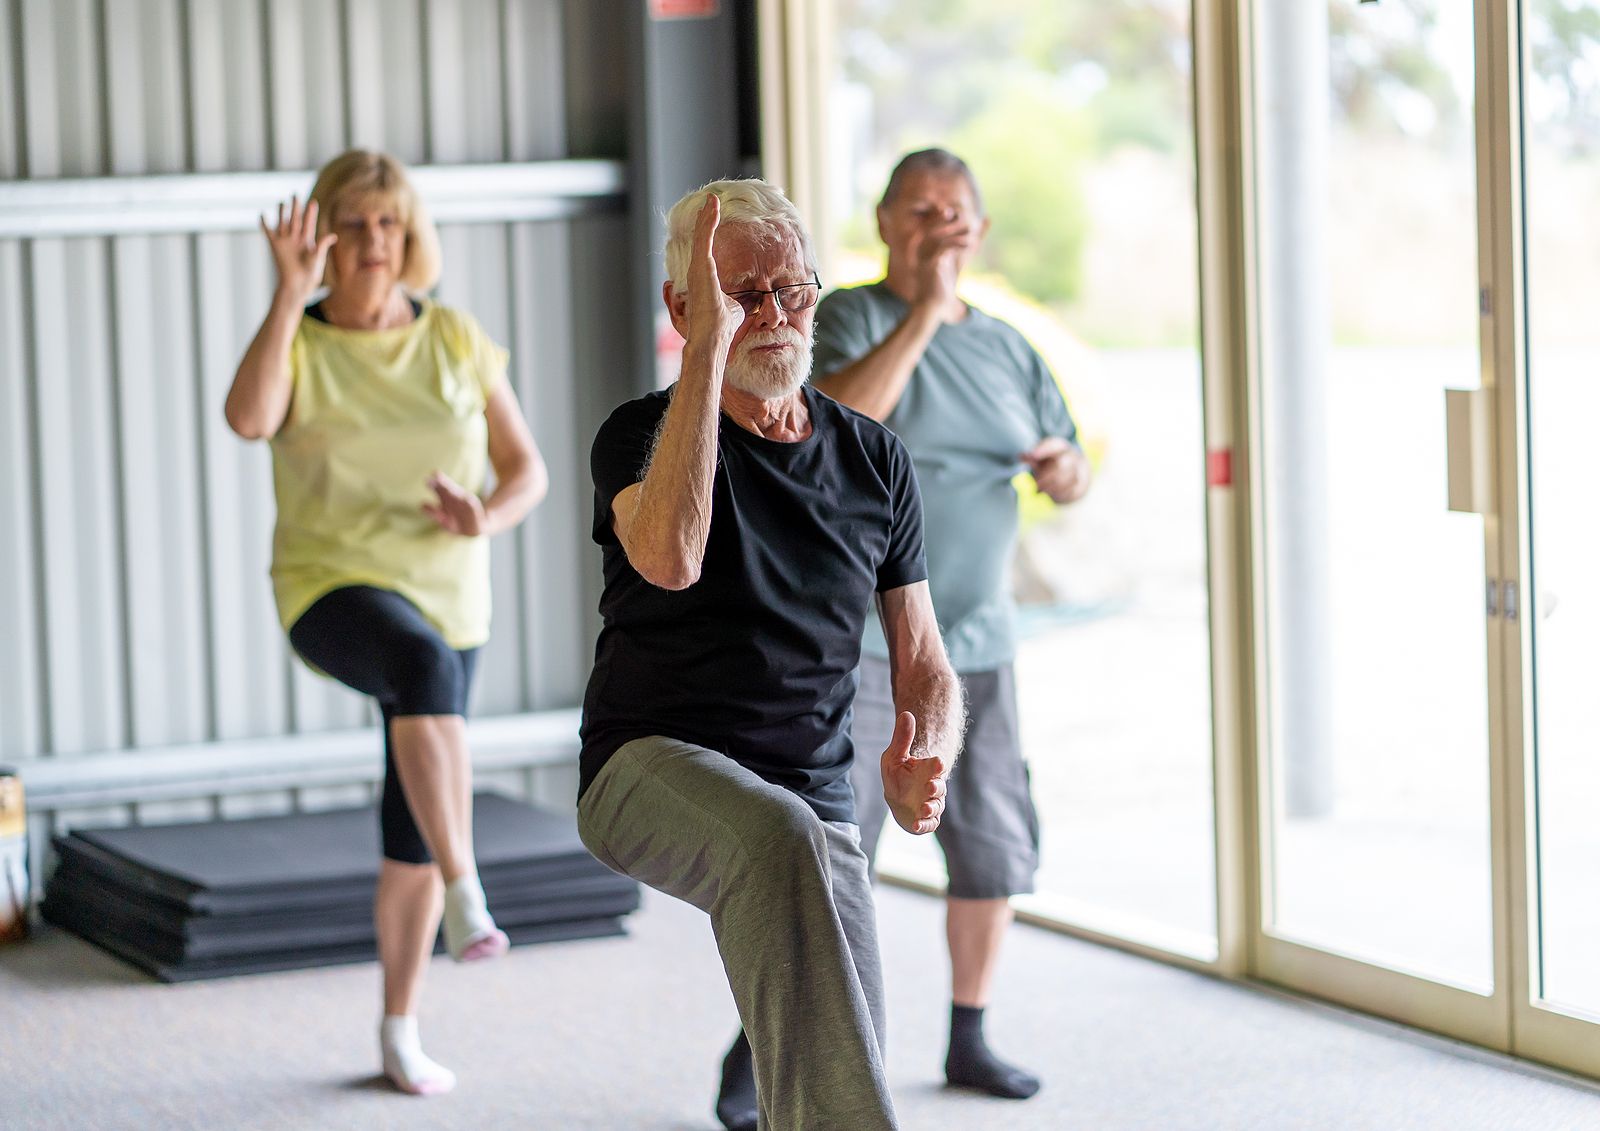 Las personas con altos niveles de actividad física tienen cerebros más jóvenes que las sedentarias